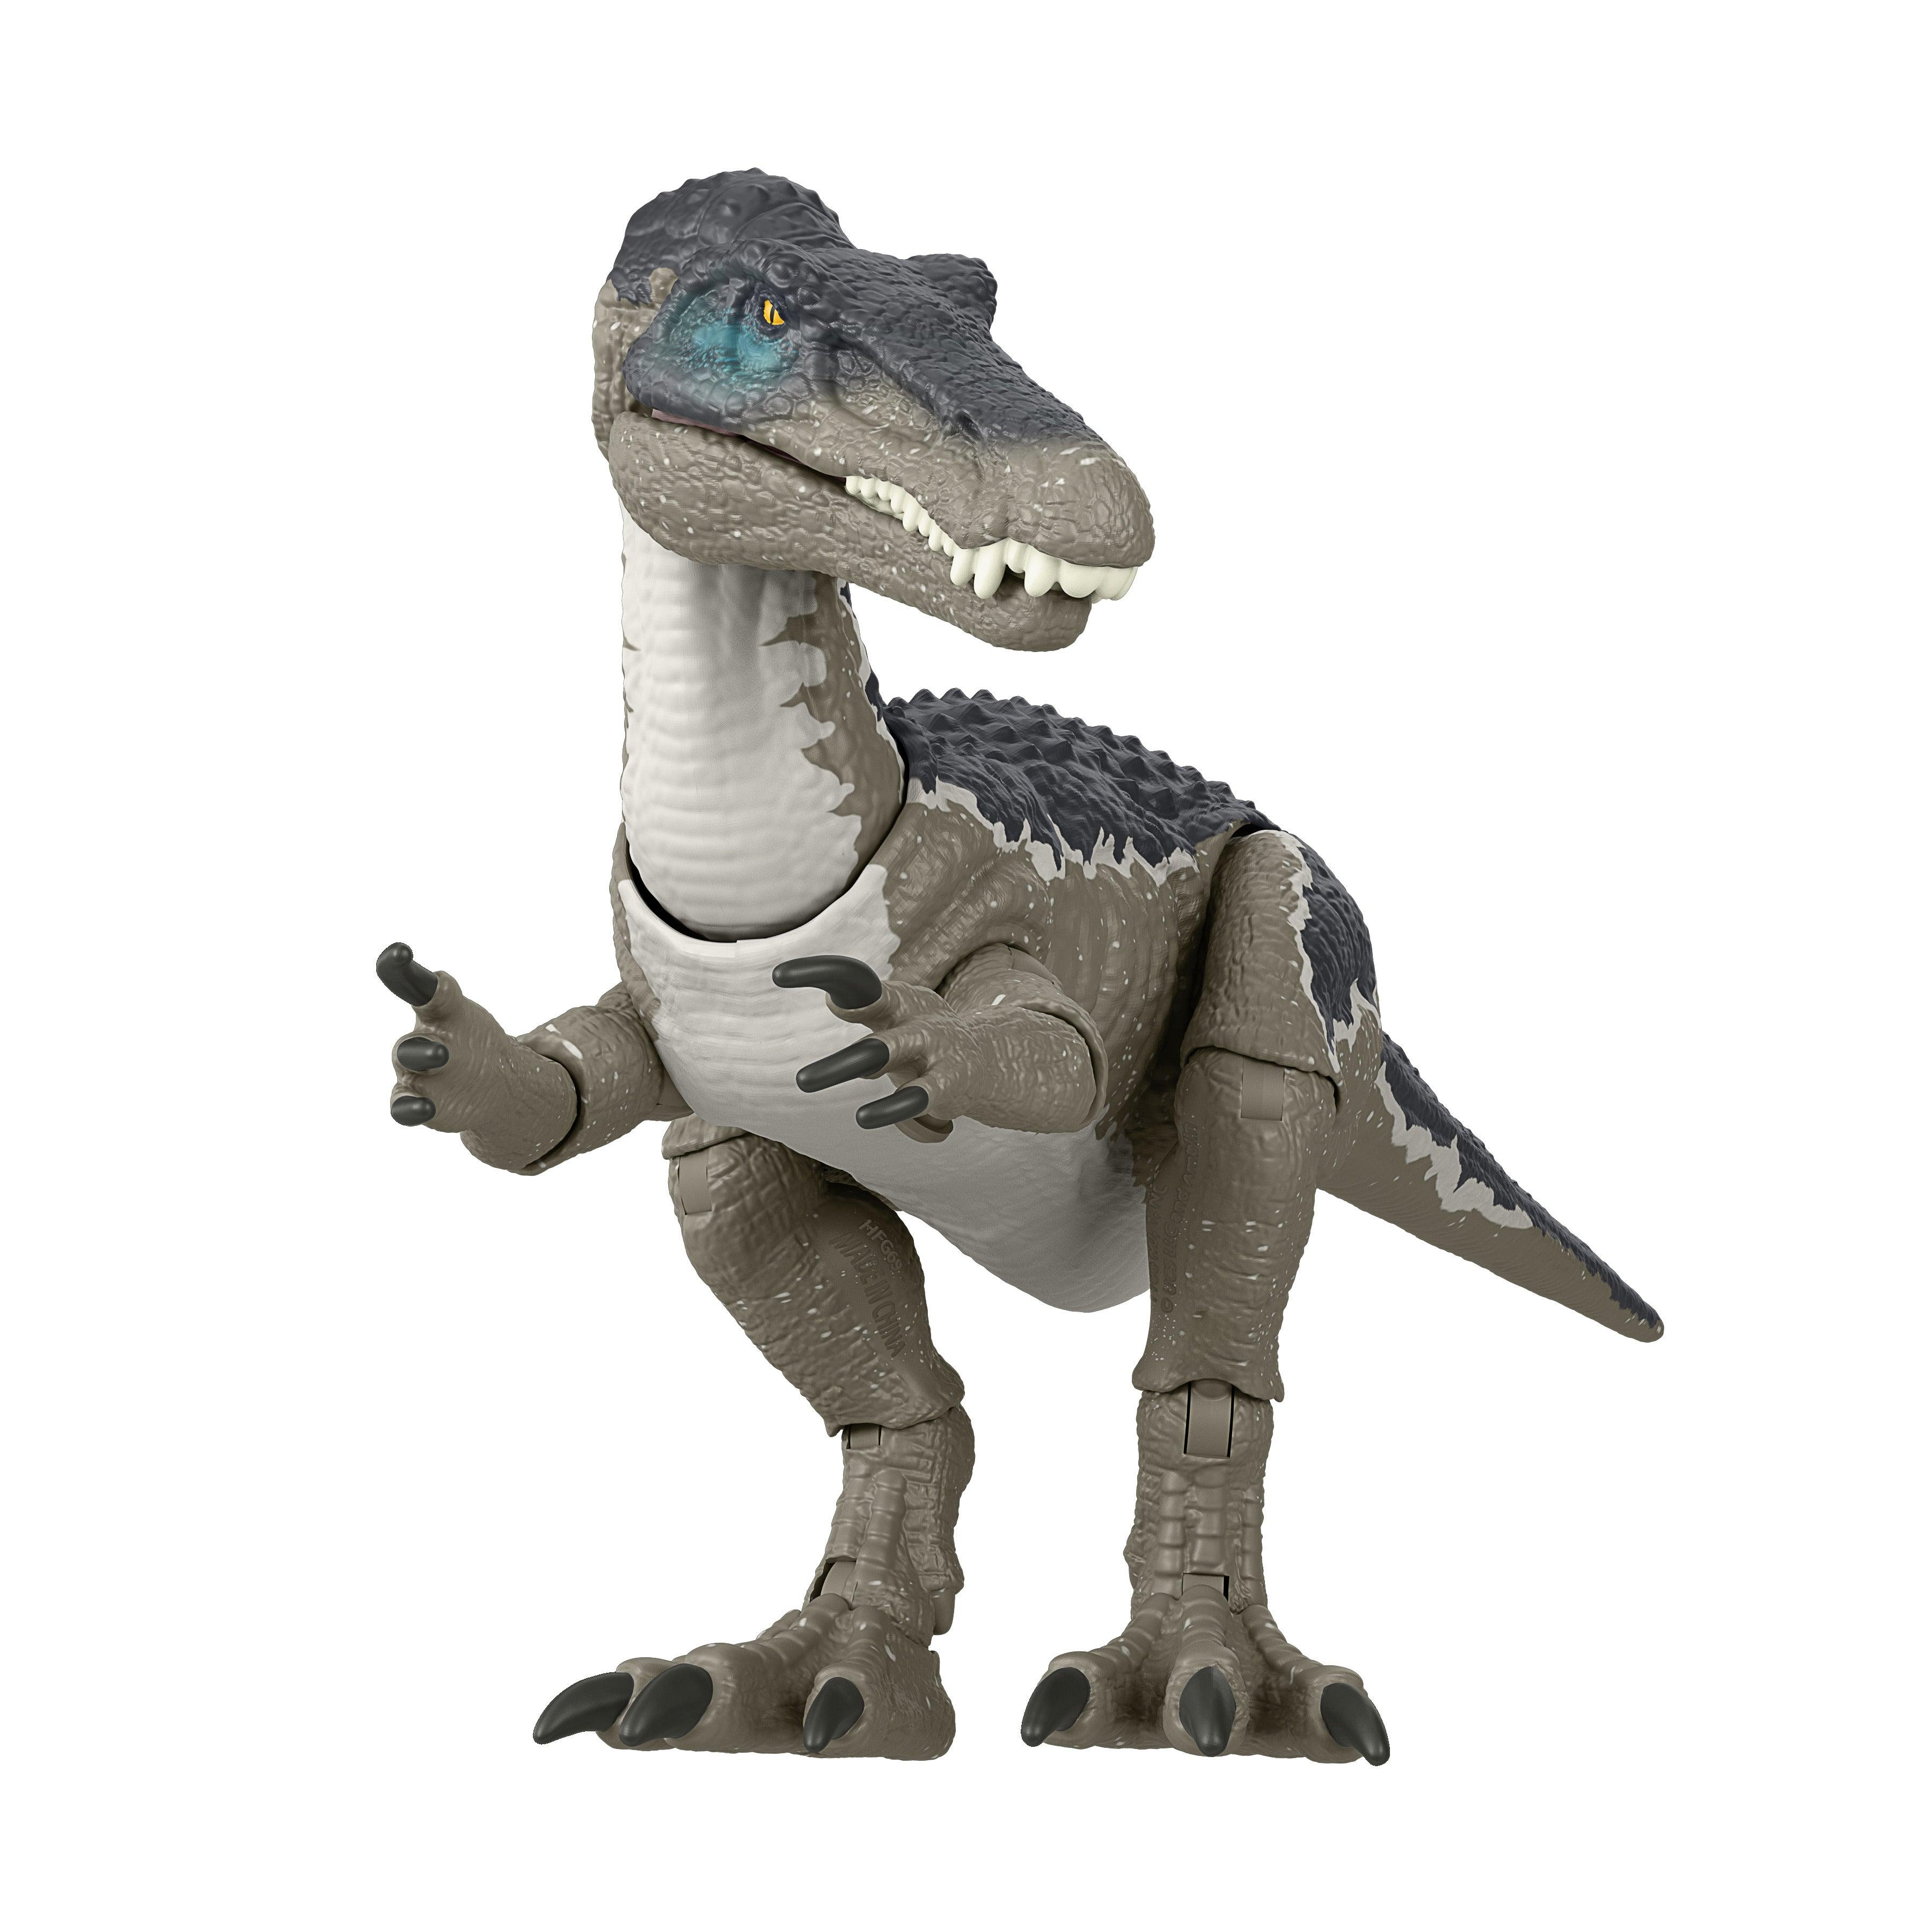 Nerf Dinosaur (No Bullets) & Jurassic Park Plush & Dinos Lot